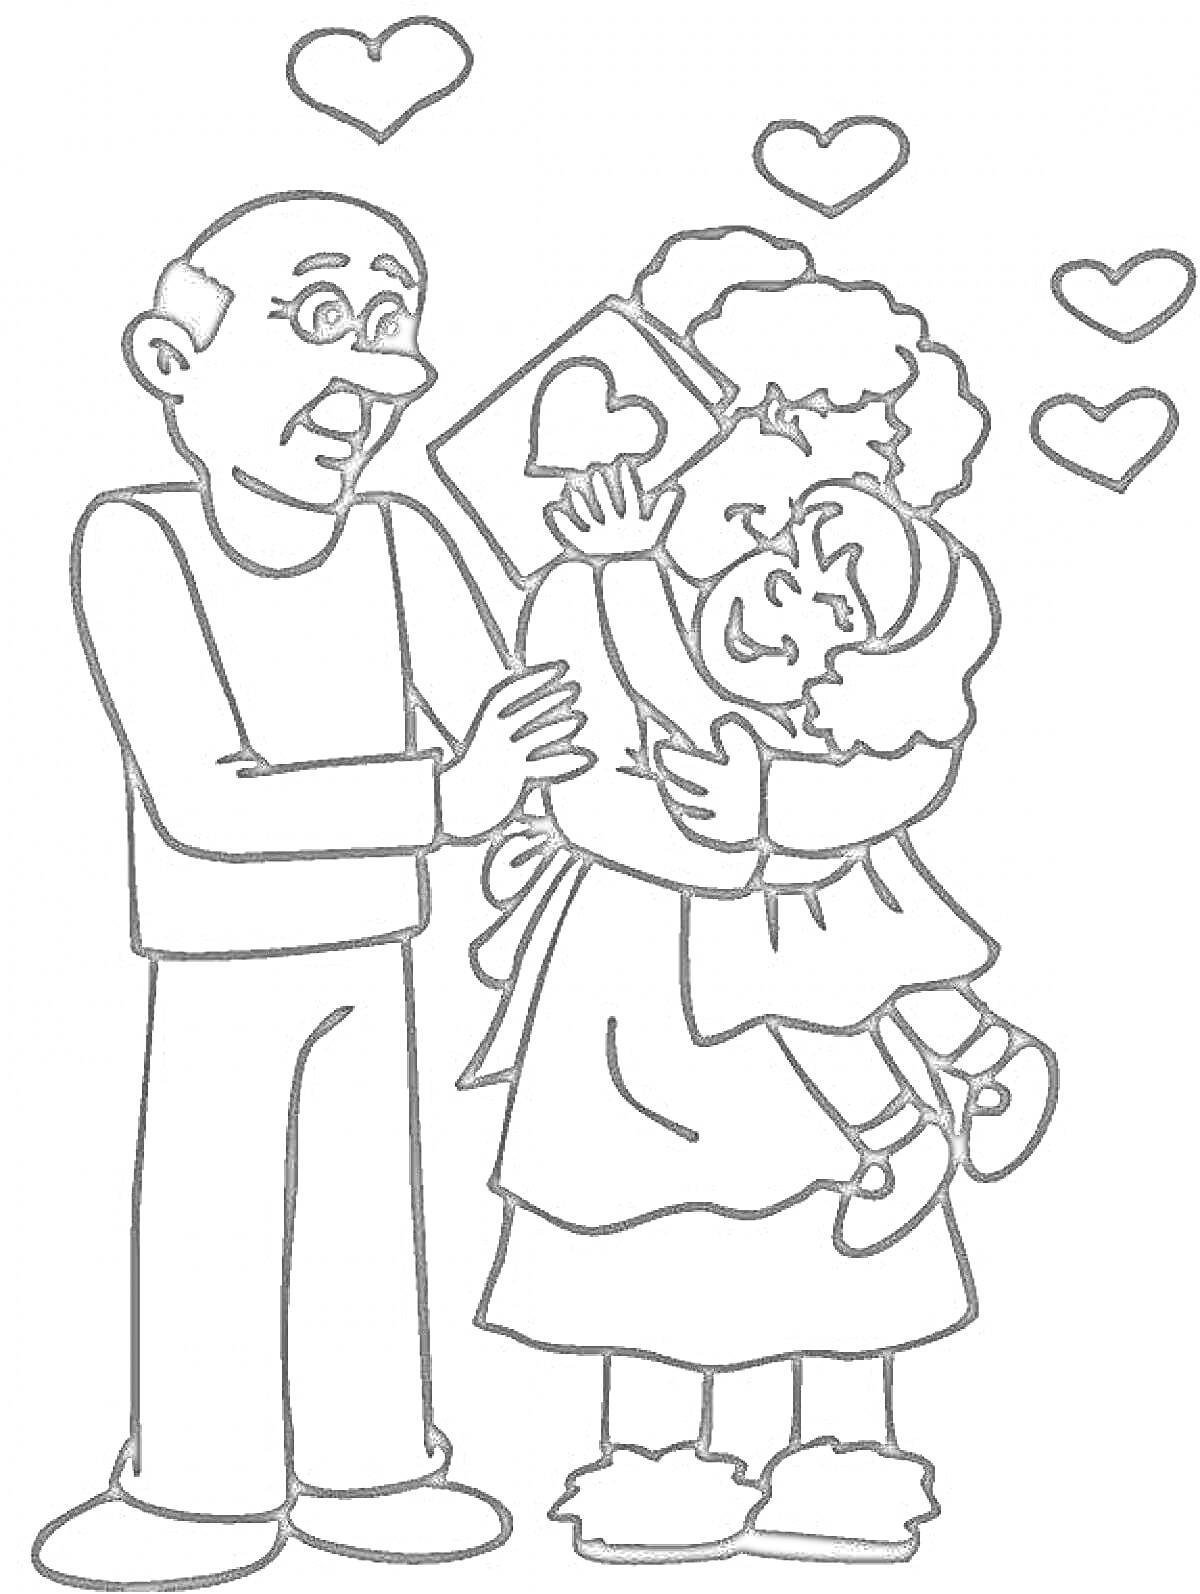 Раскраска Бабушка обнимает внучку, дедушка держит открытку с сердцем в доме, несколько сердечек вокруг